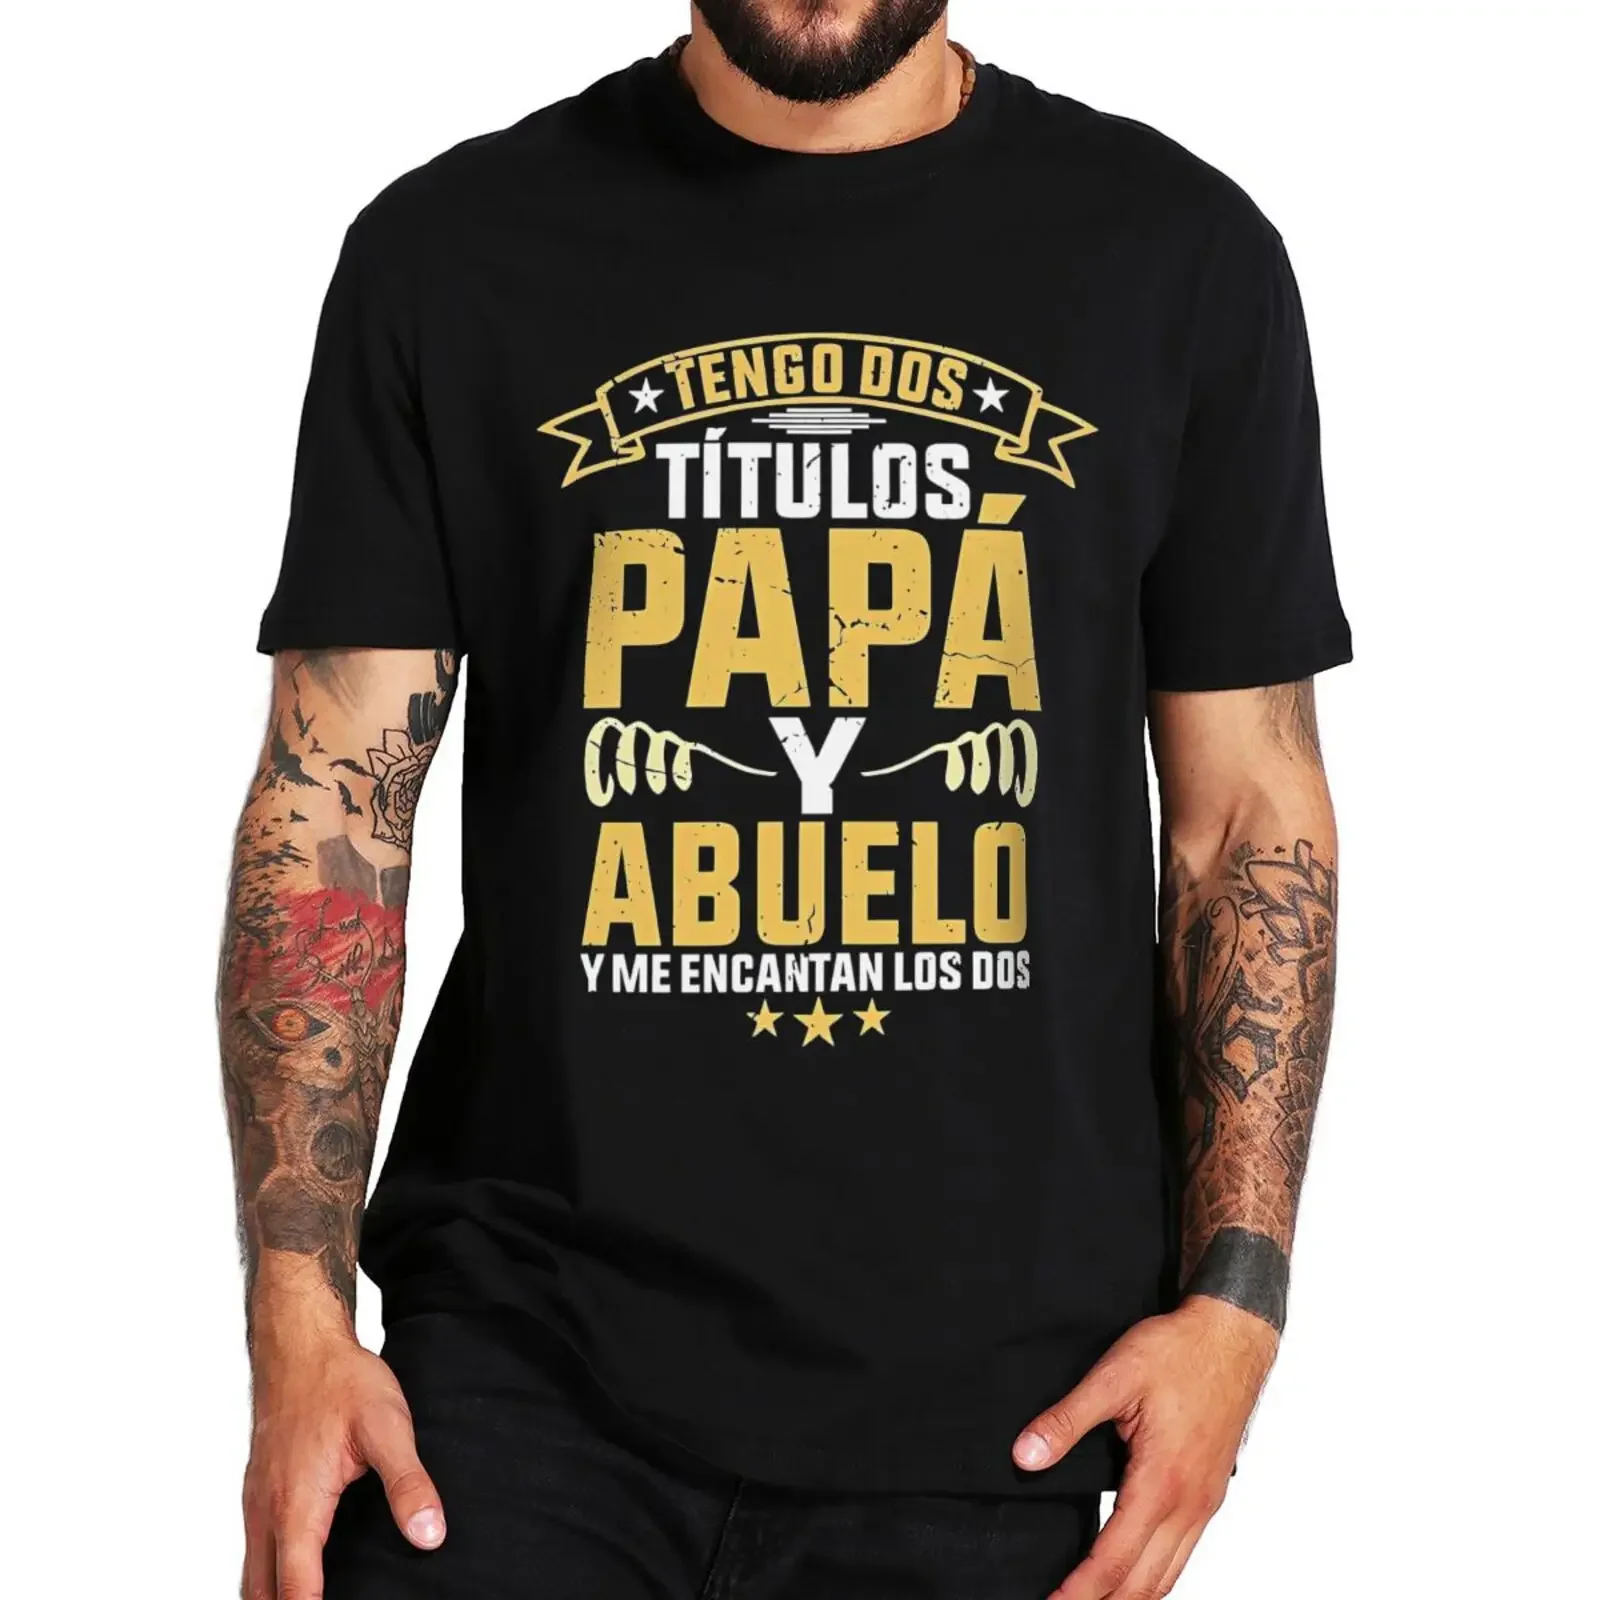 

Футболка для папы и дедушки с надписью «У меня есть два названия», Забавный испанский юмор, подарок на день папы и отца, футболки, топы, европейский размер, 100% хлопок, Повседневная футболка